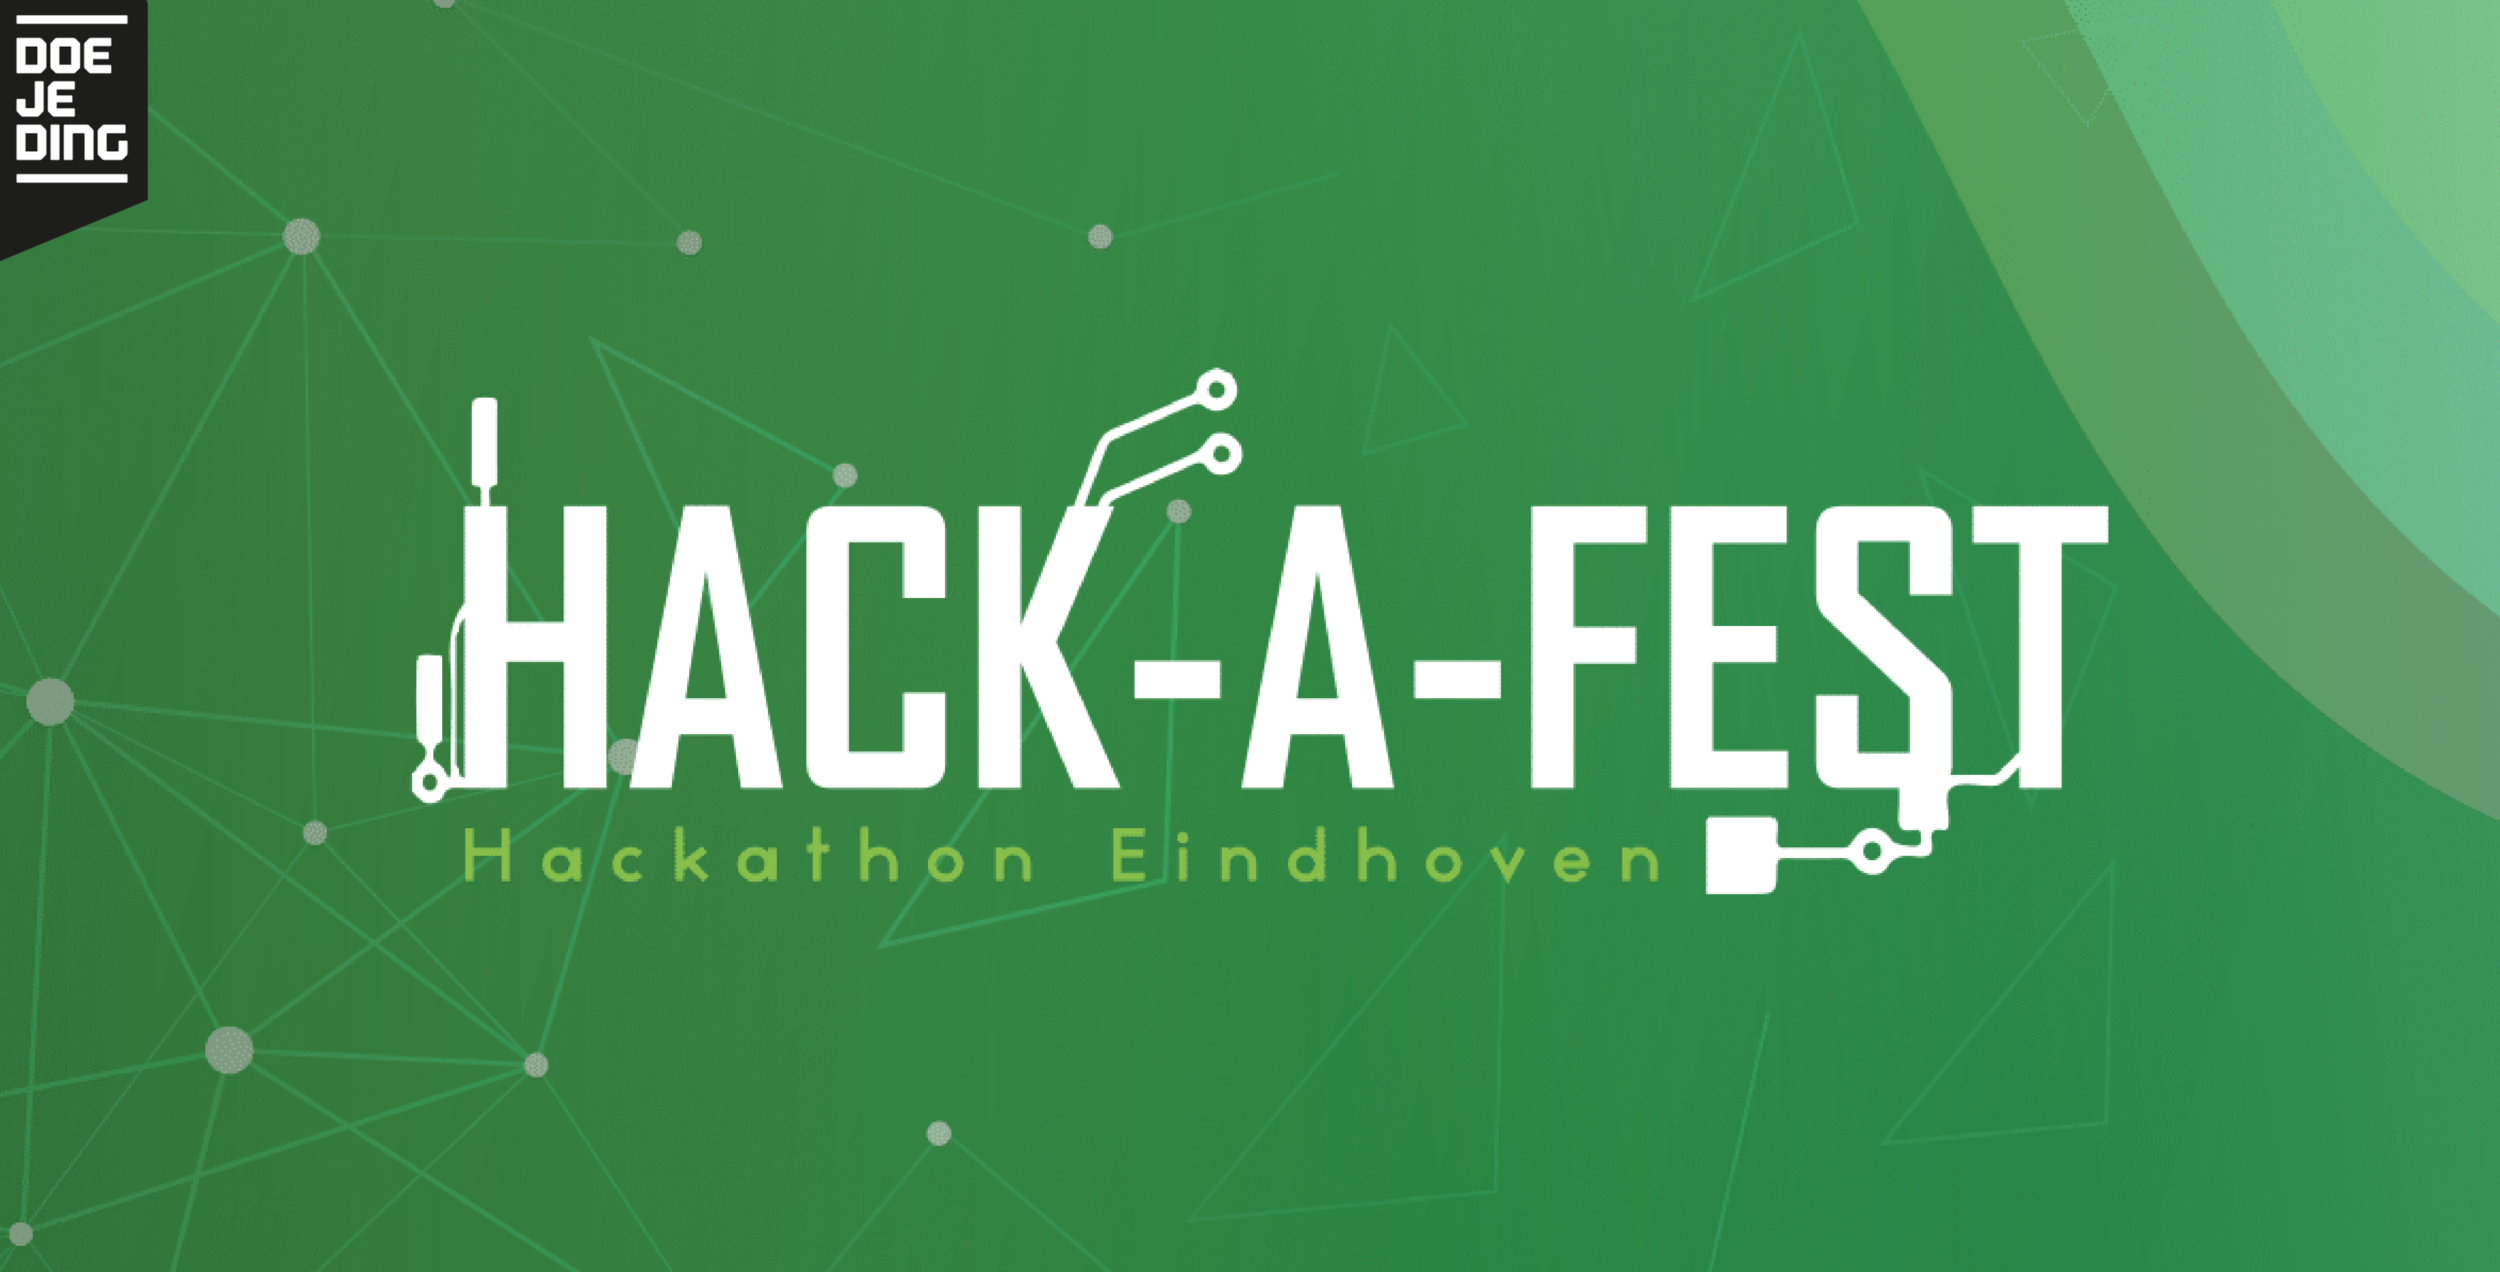 Hack-A-Fest